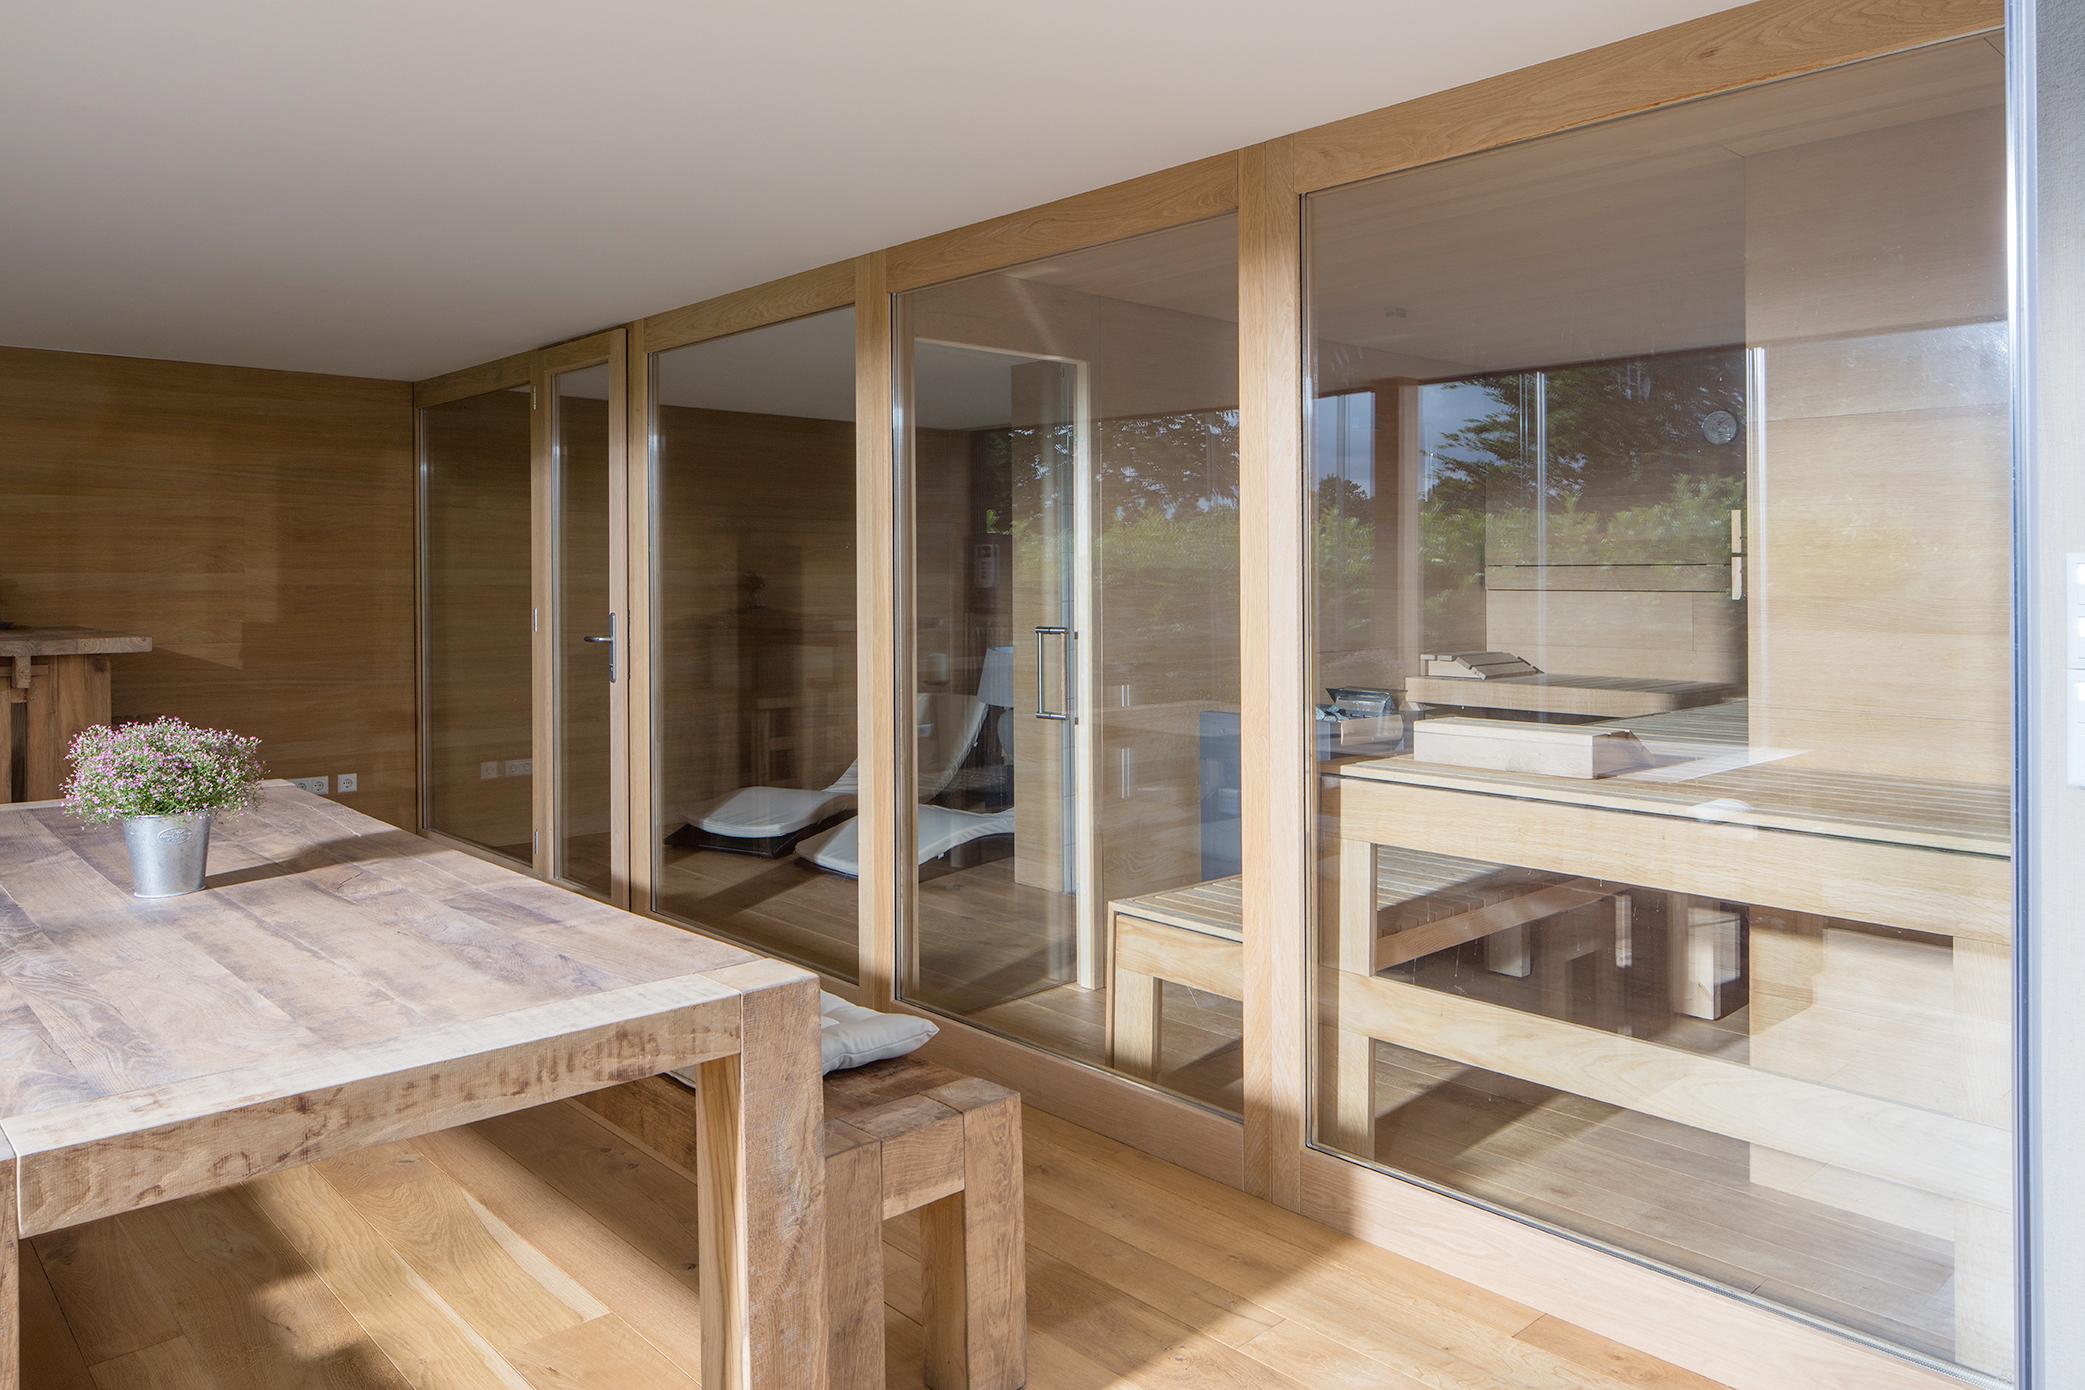 Designsauna mitangebautem Wintergarten #sauna ©corso sauna manufaktur